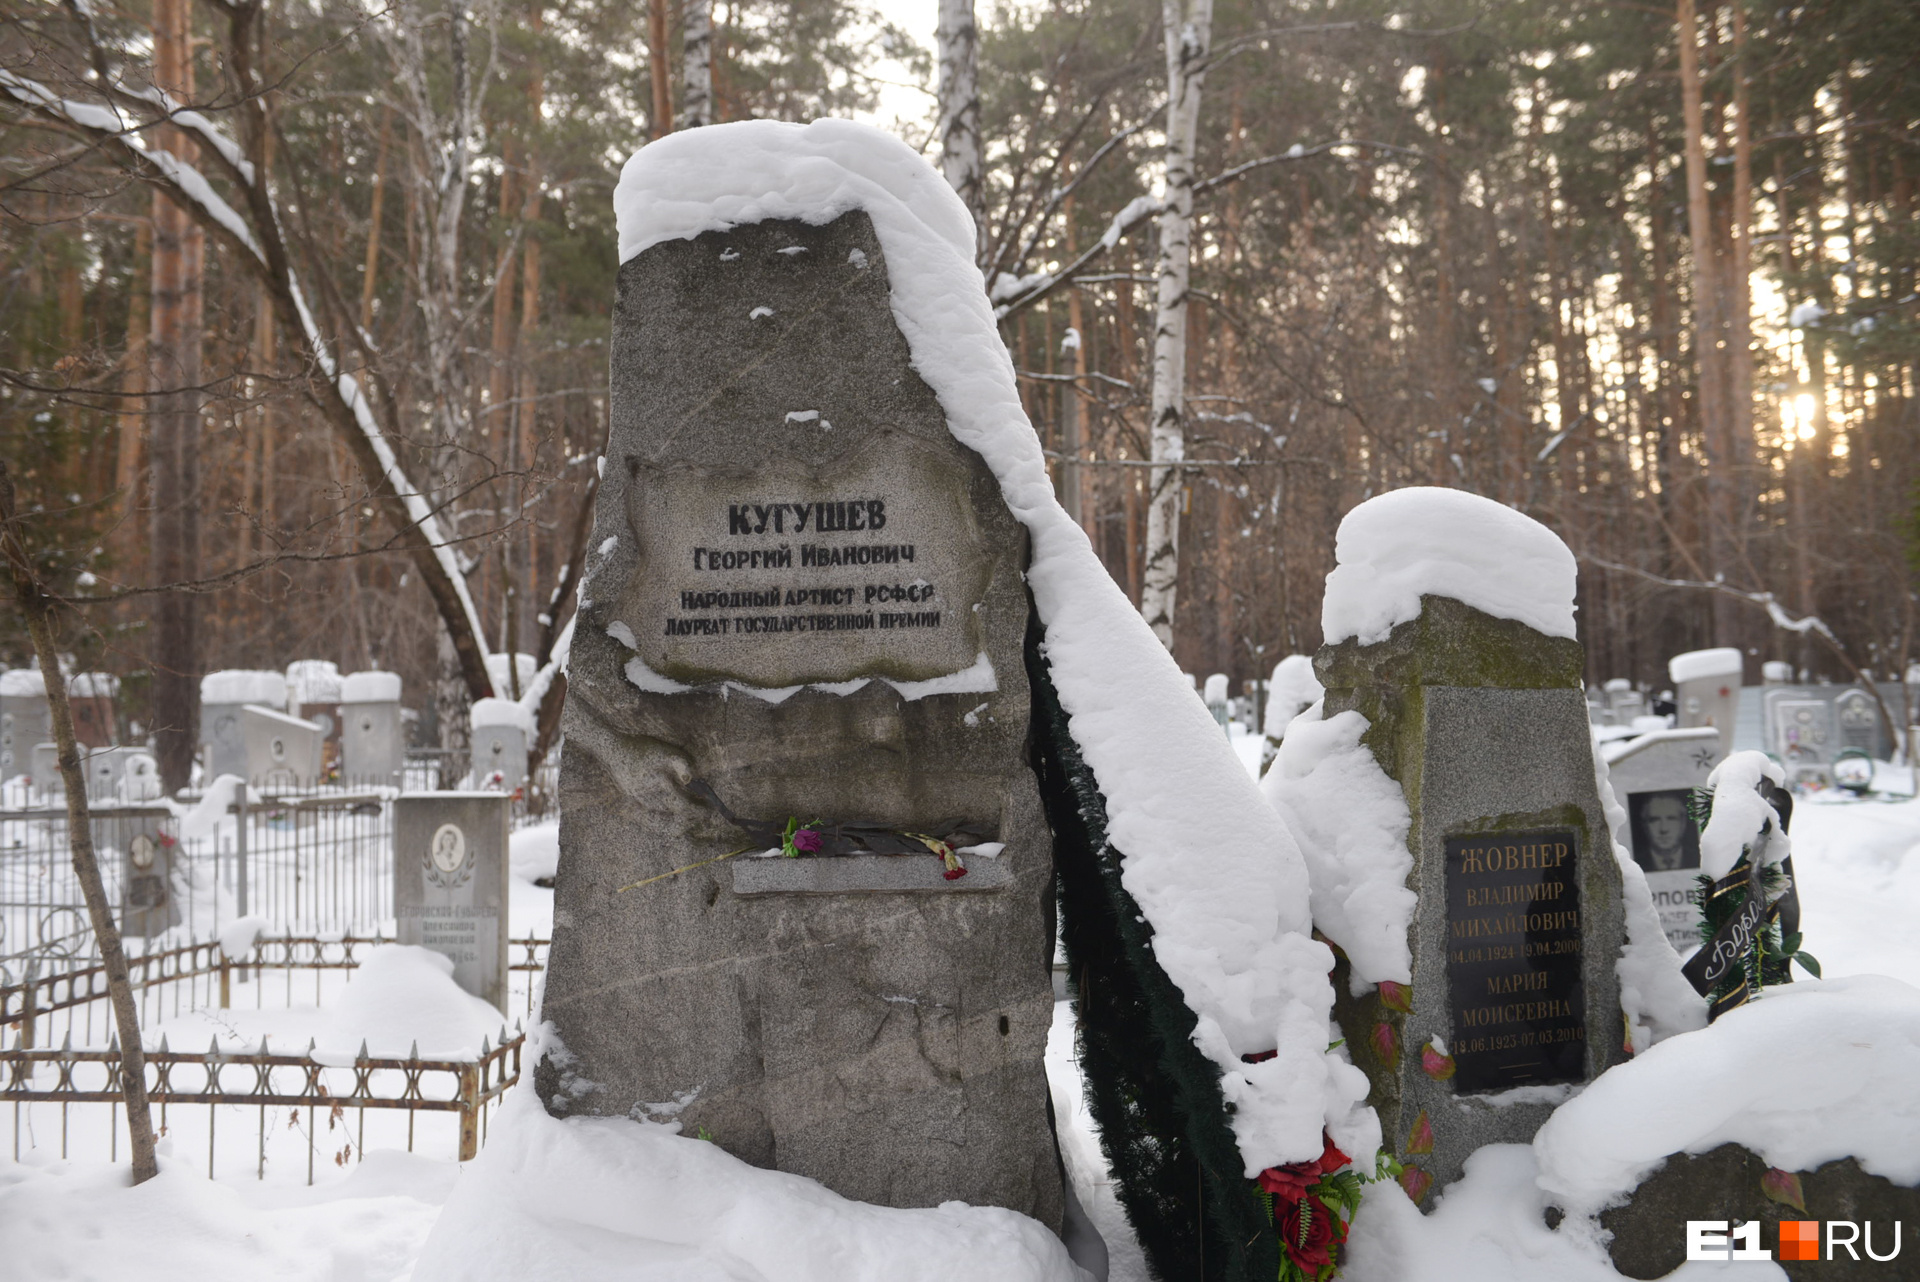 Памятник Кугушеву — один из самых внушительных на аллее артистов